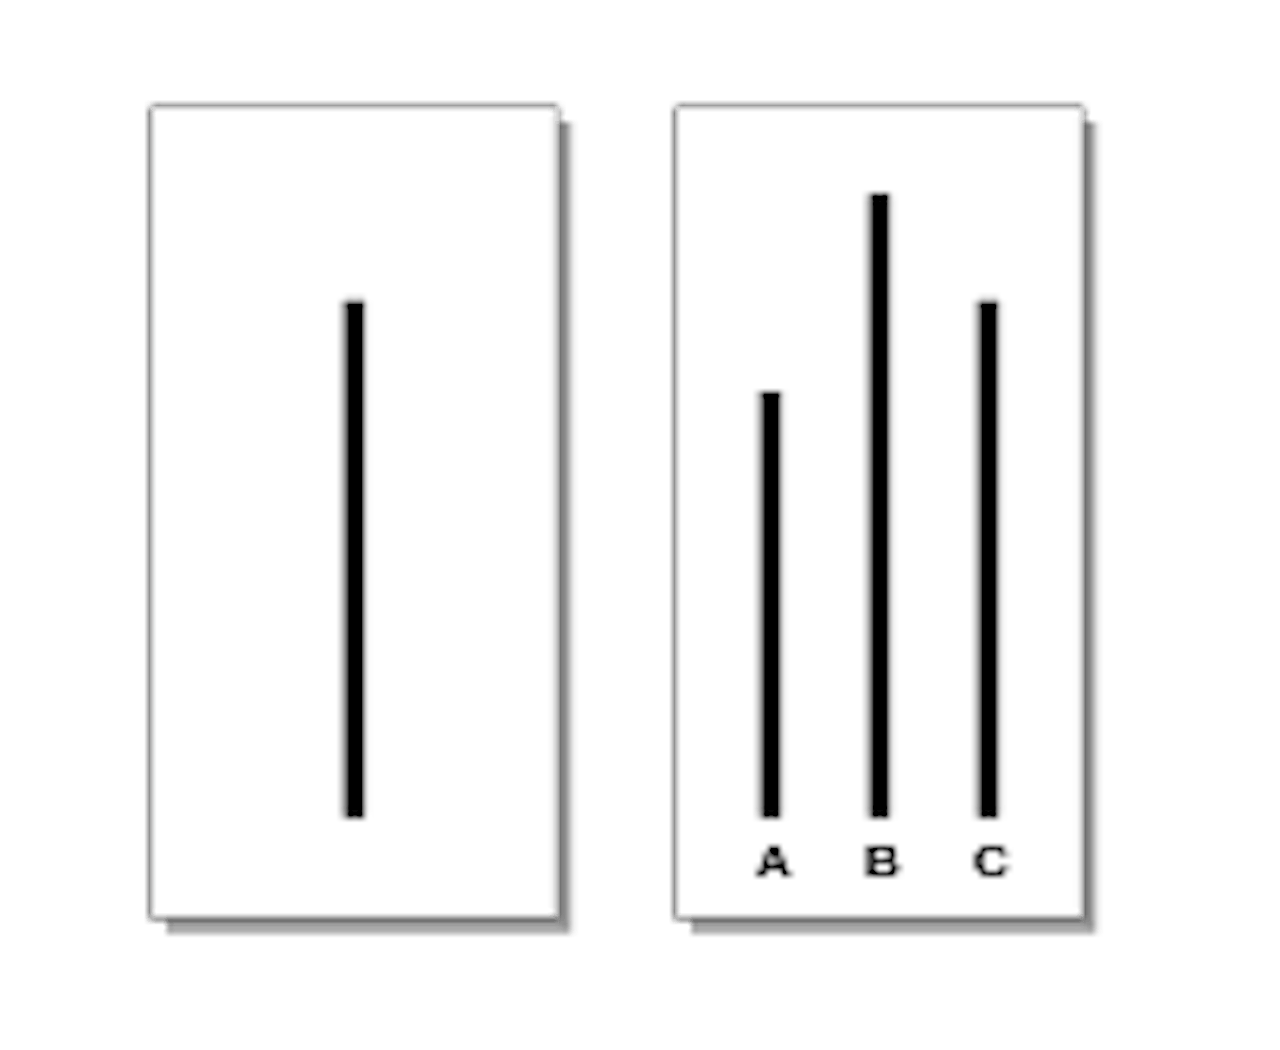 Twee witte kolommen. In de linkerkolom is een verticale streep te zien. In de tweede kolom zijn drie verticale strepen te zien die worden aangeduid met de letters A, B en C.